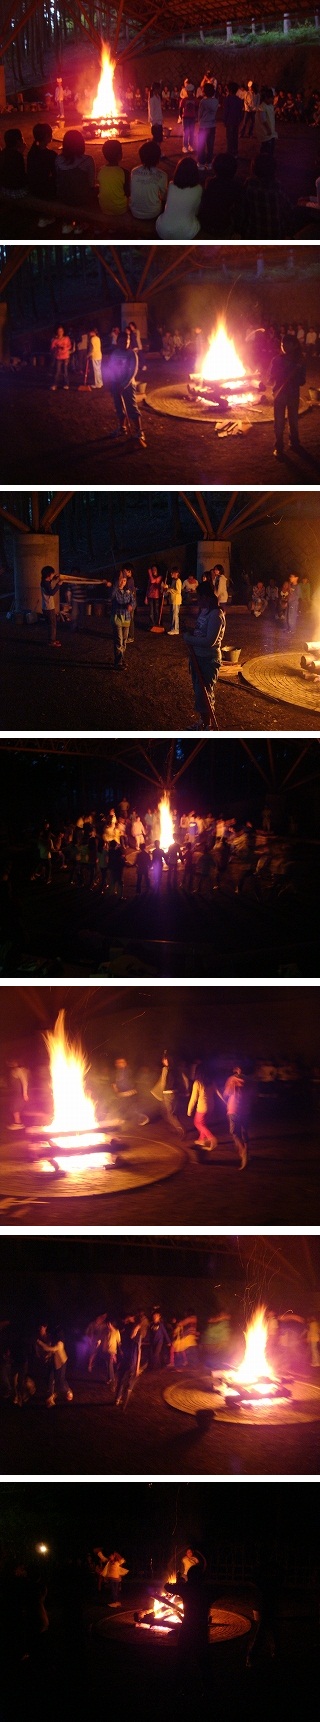 110730 campfire.jpg